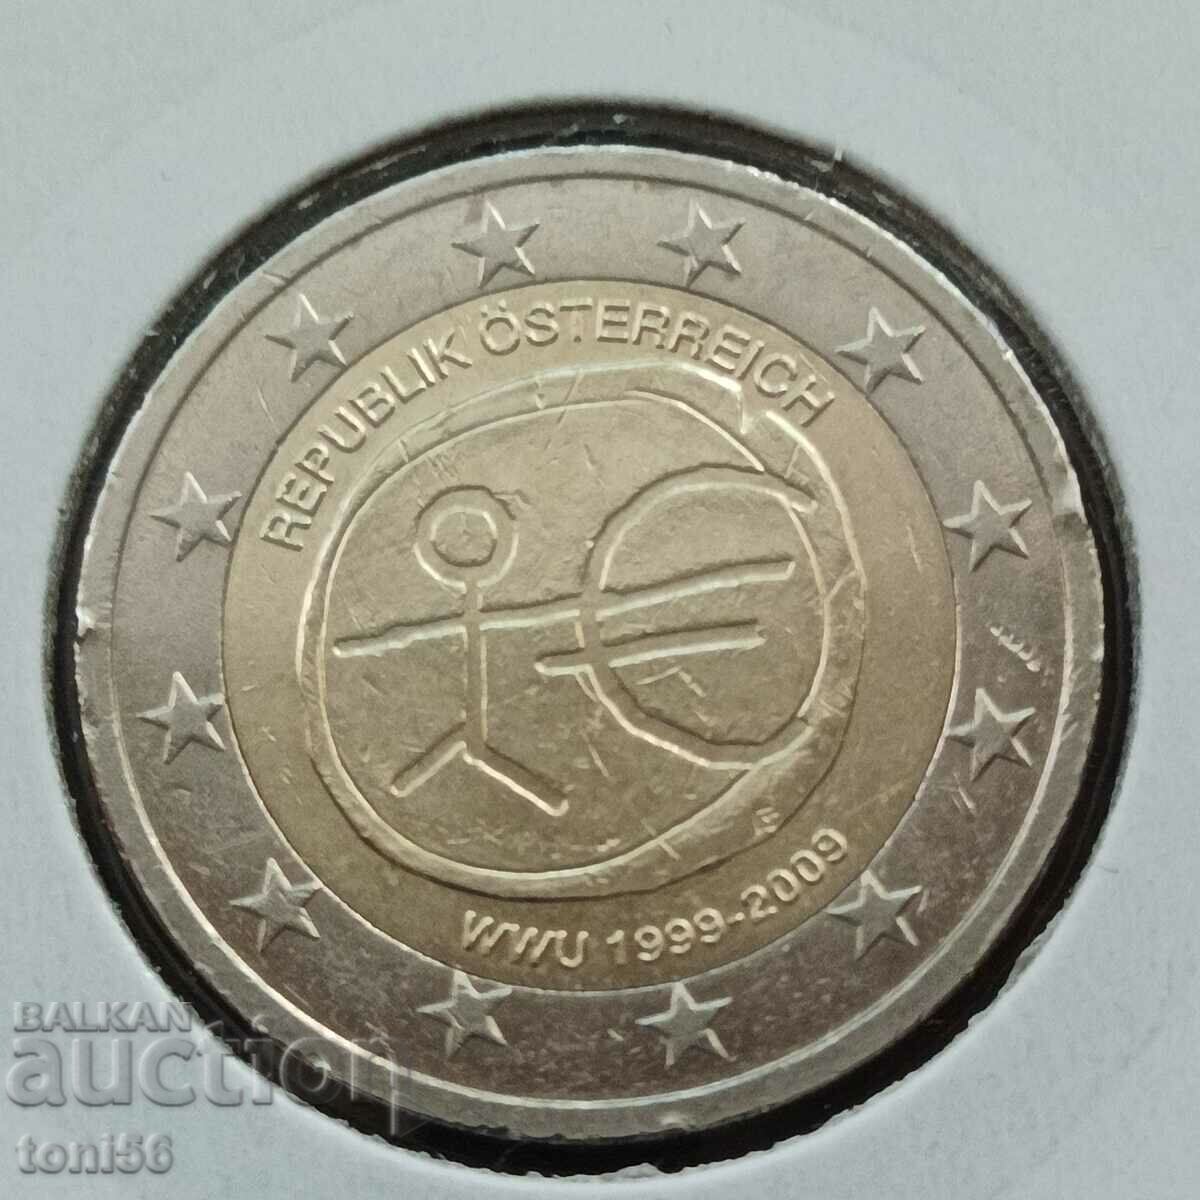 Австрия 2 евро 2009 - 10 г "Икономически съюз"